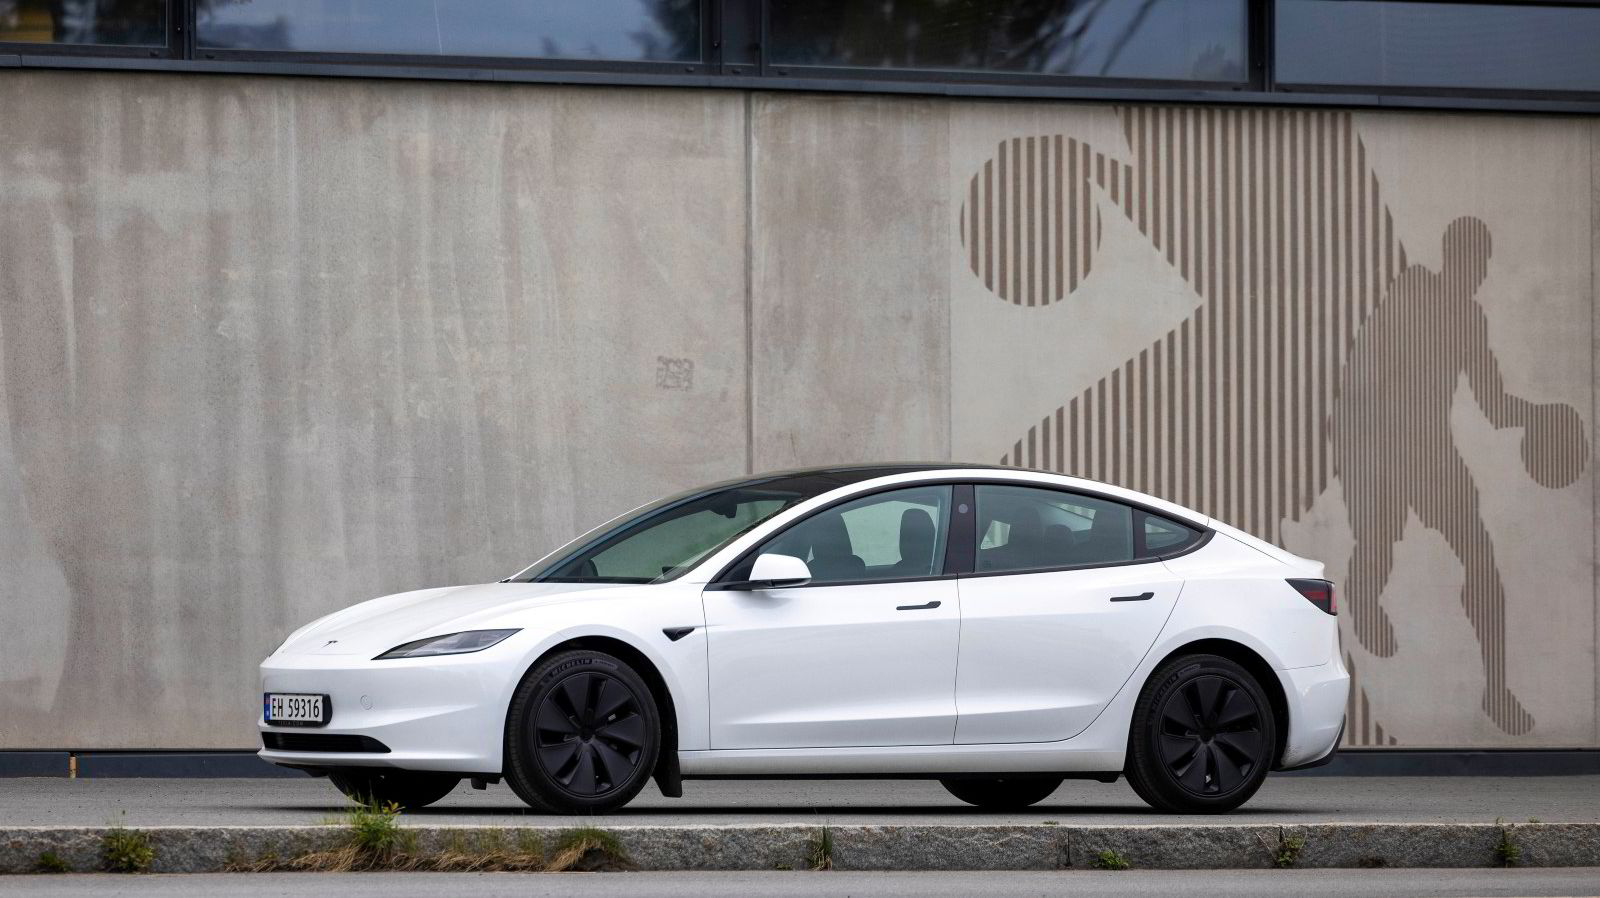 Biltest av Tesla Model 3: Den beste «billigbilen»